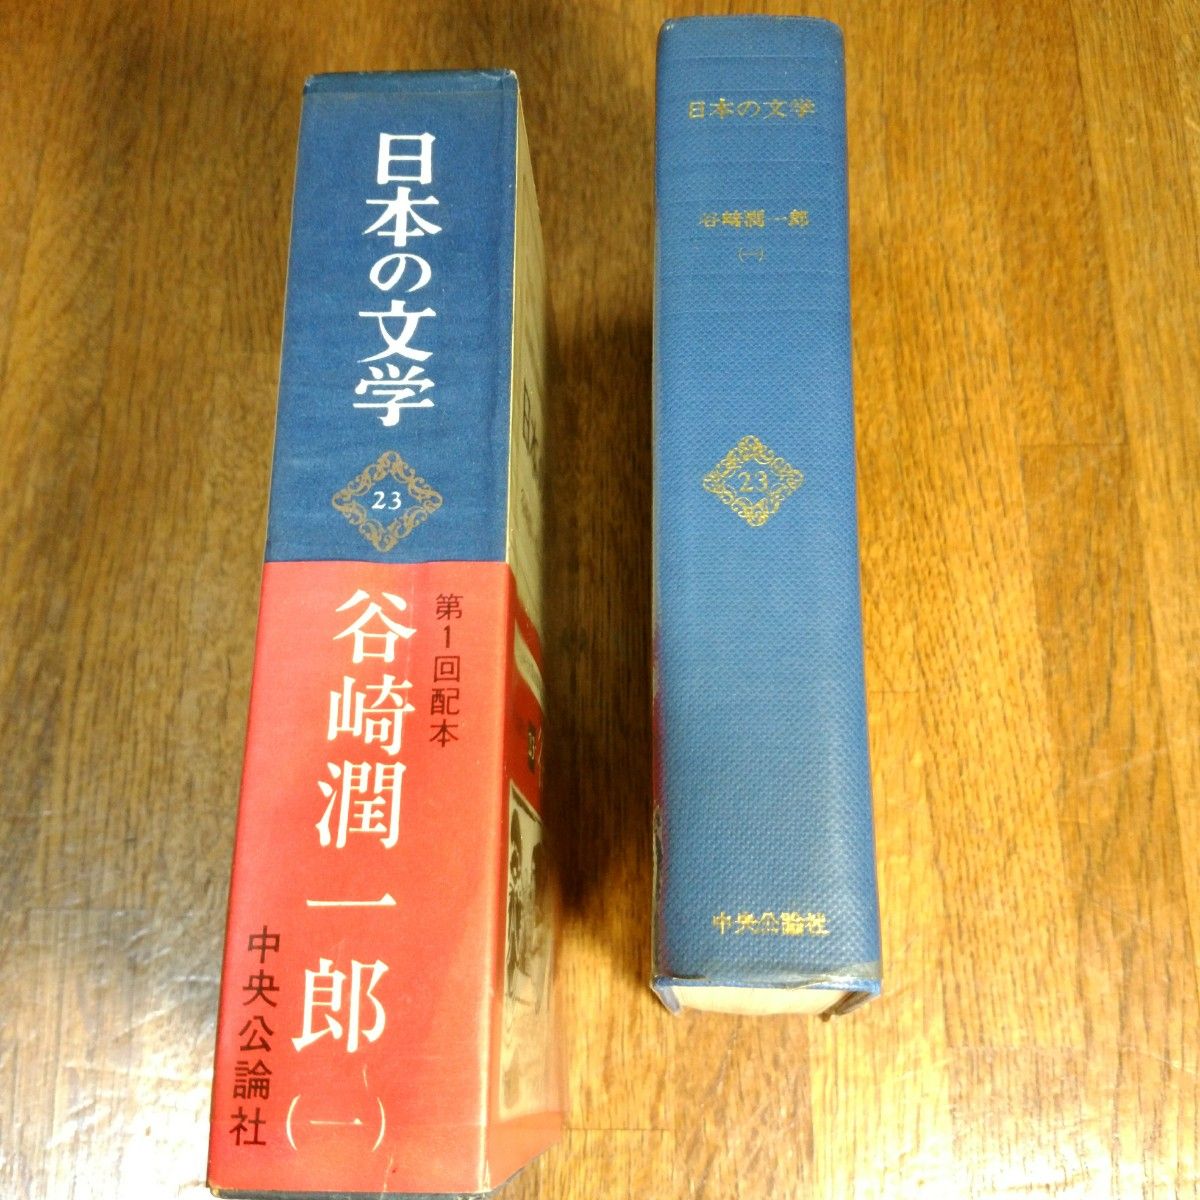 日本の文学(23)　谷崎潤一郎(1)　中央公論社